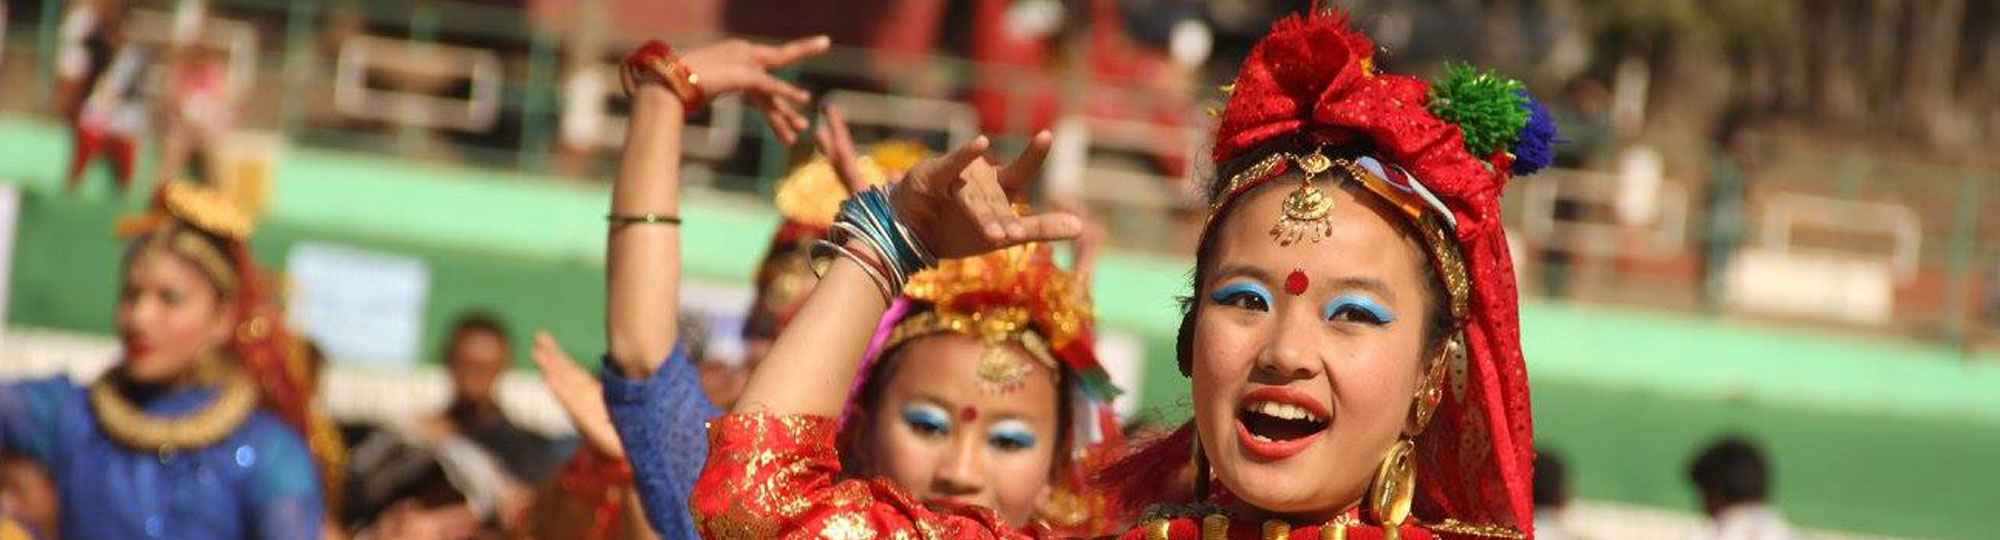 sikkim festival @t2sikkim.com